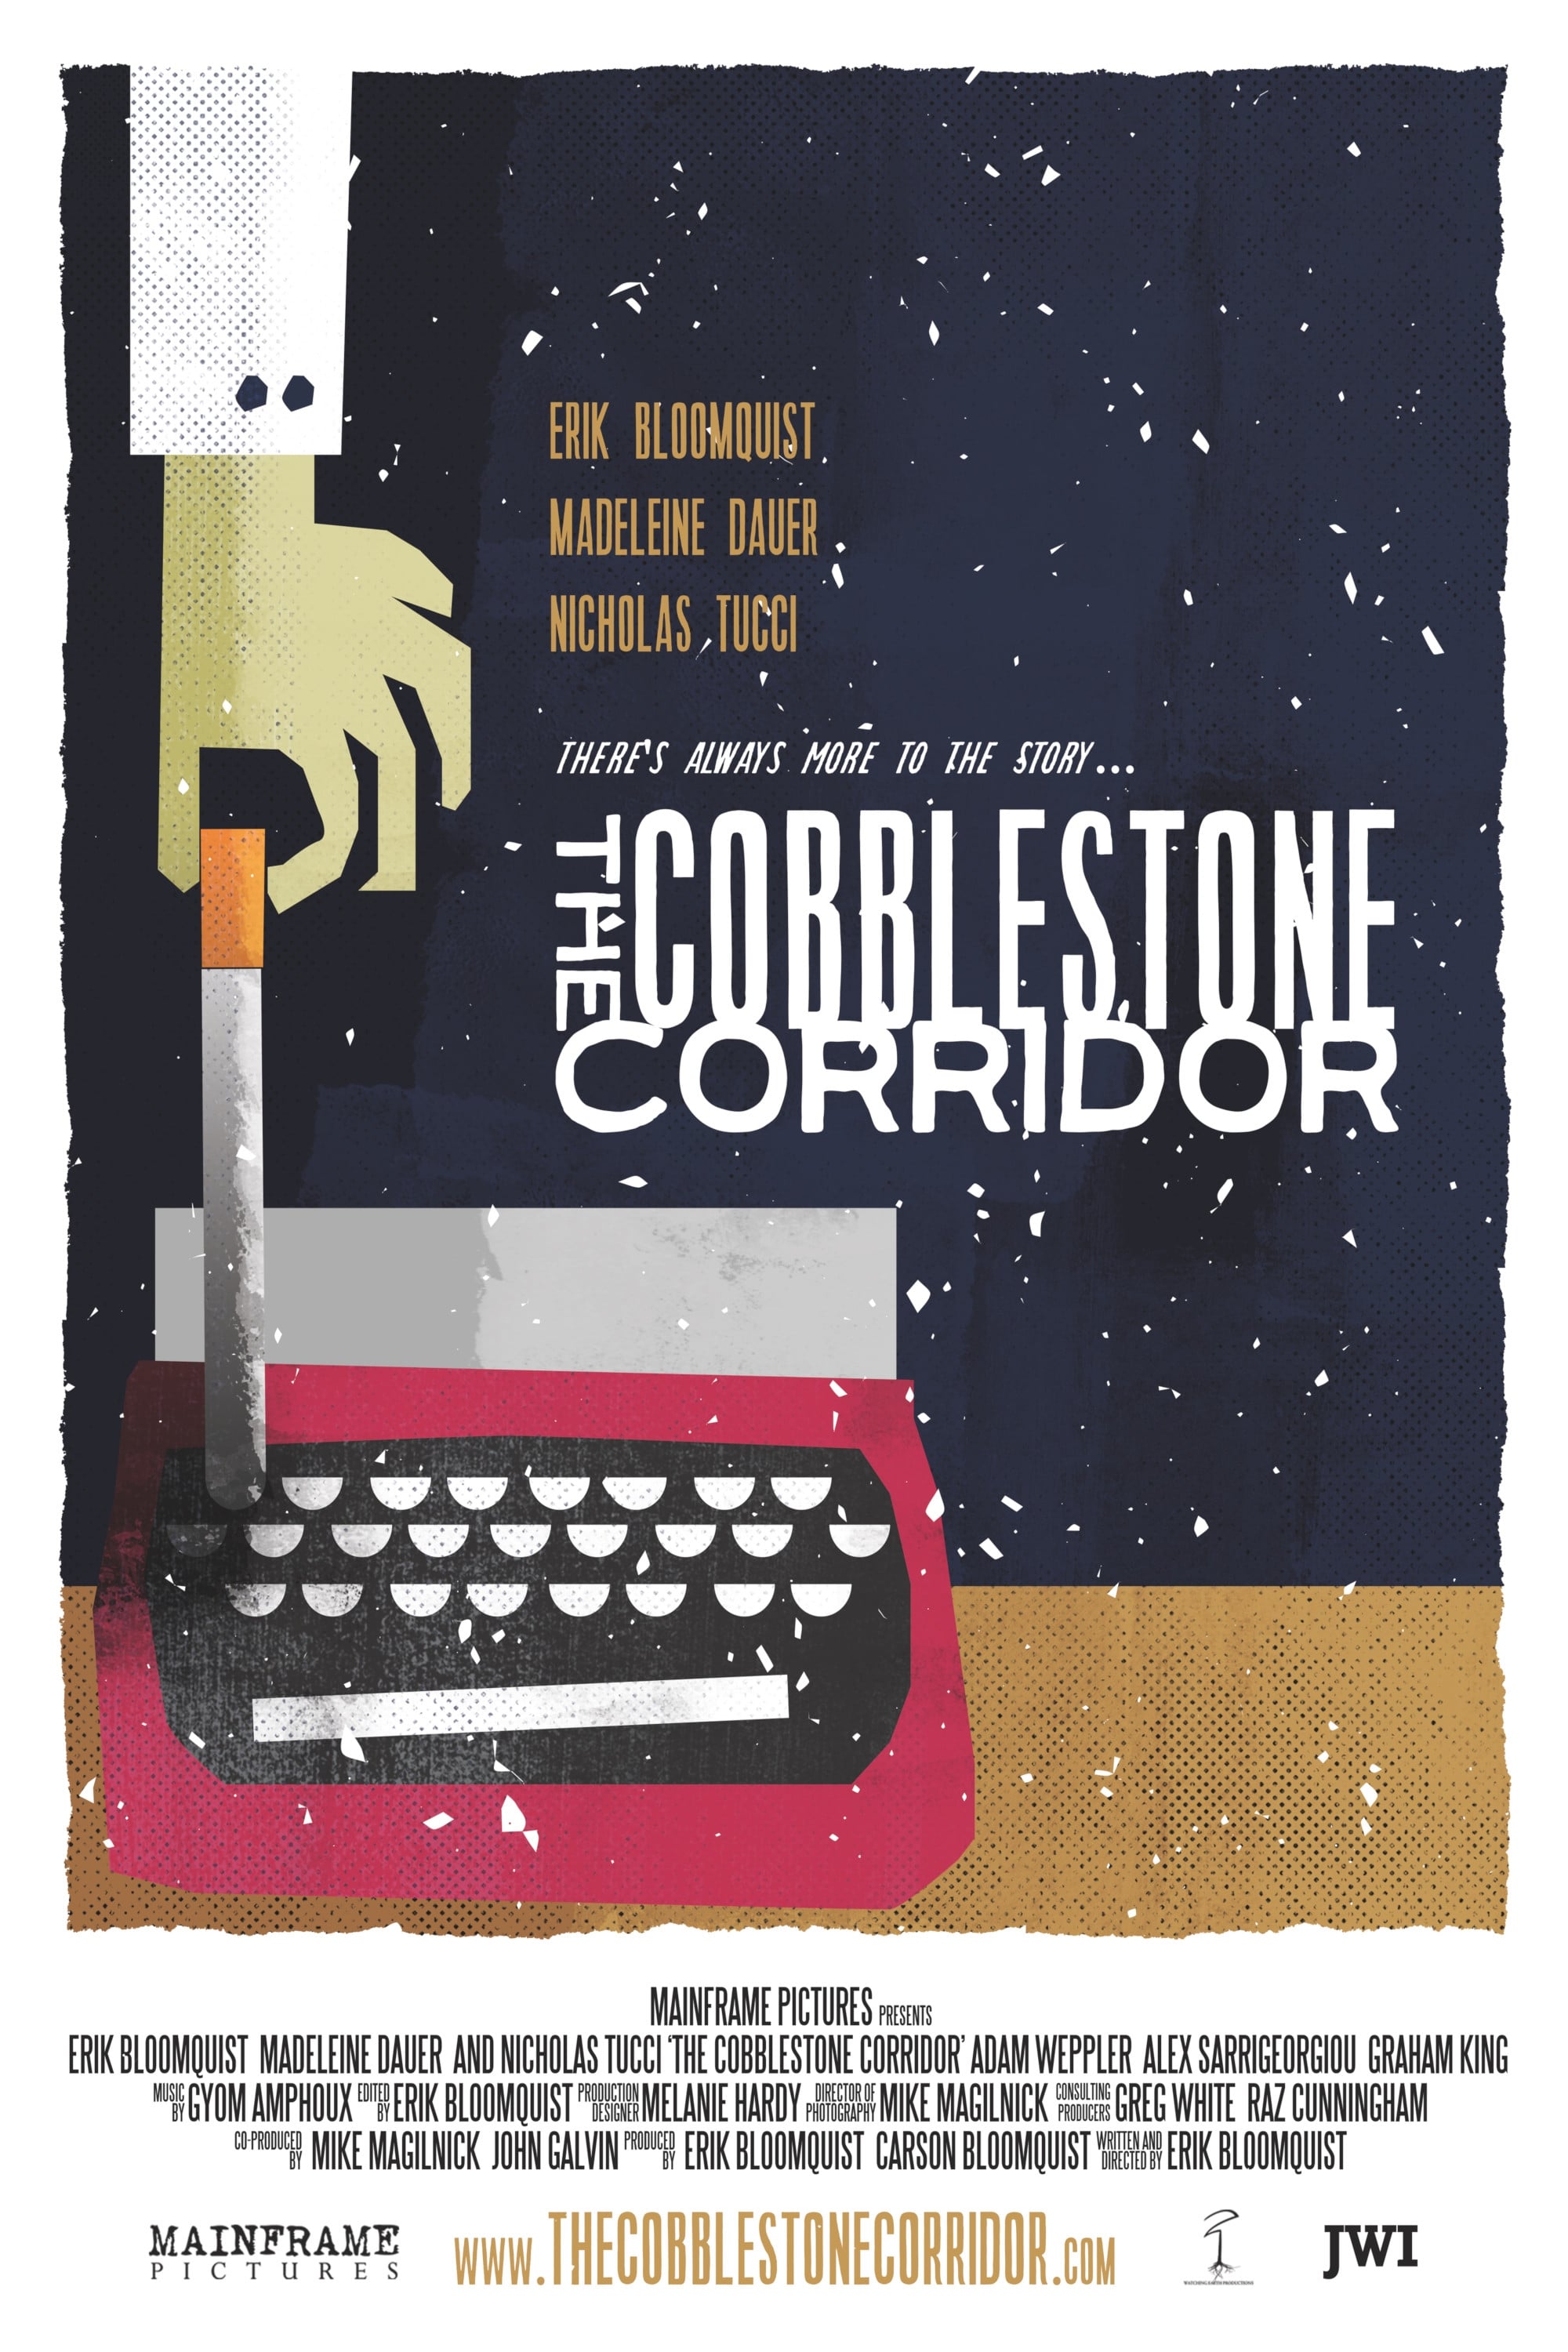 The Cobblestone Corridor film